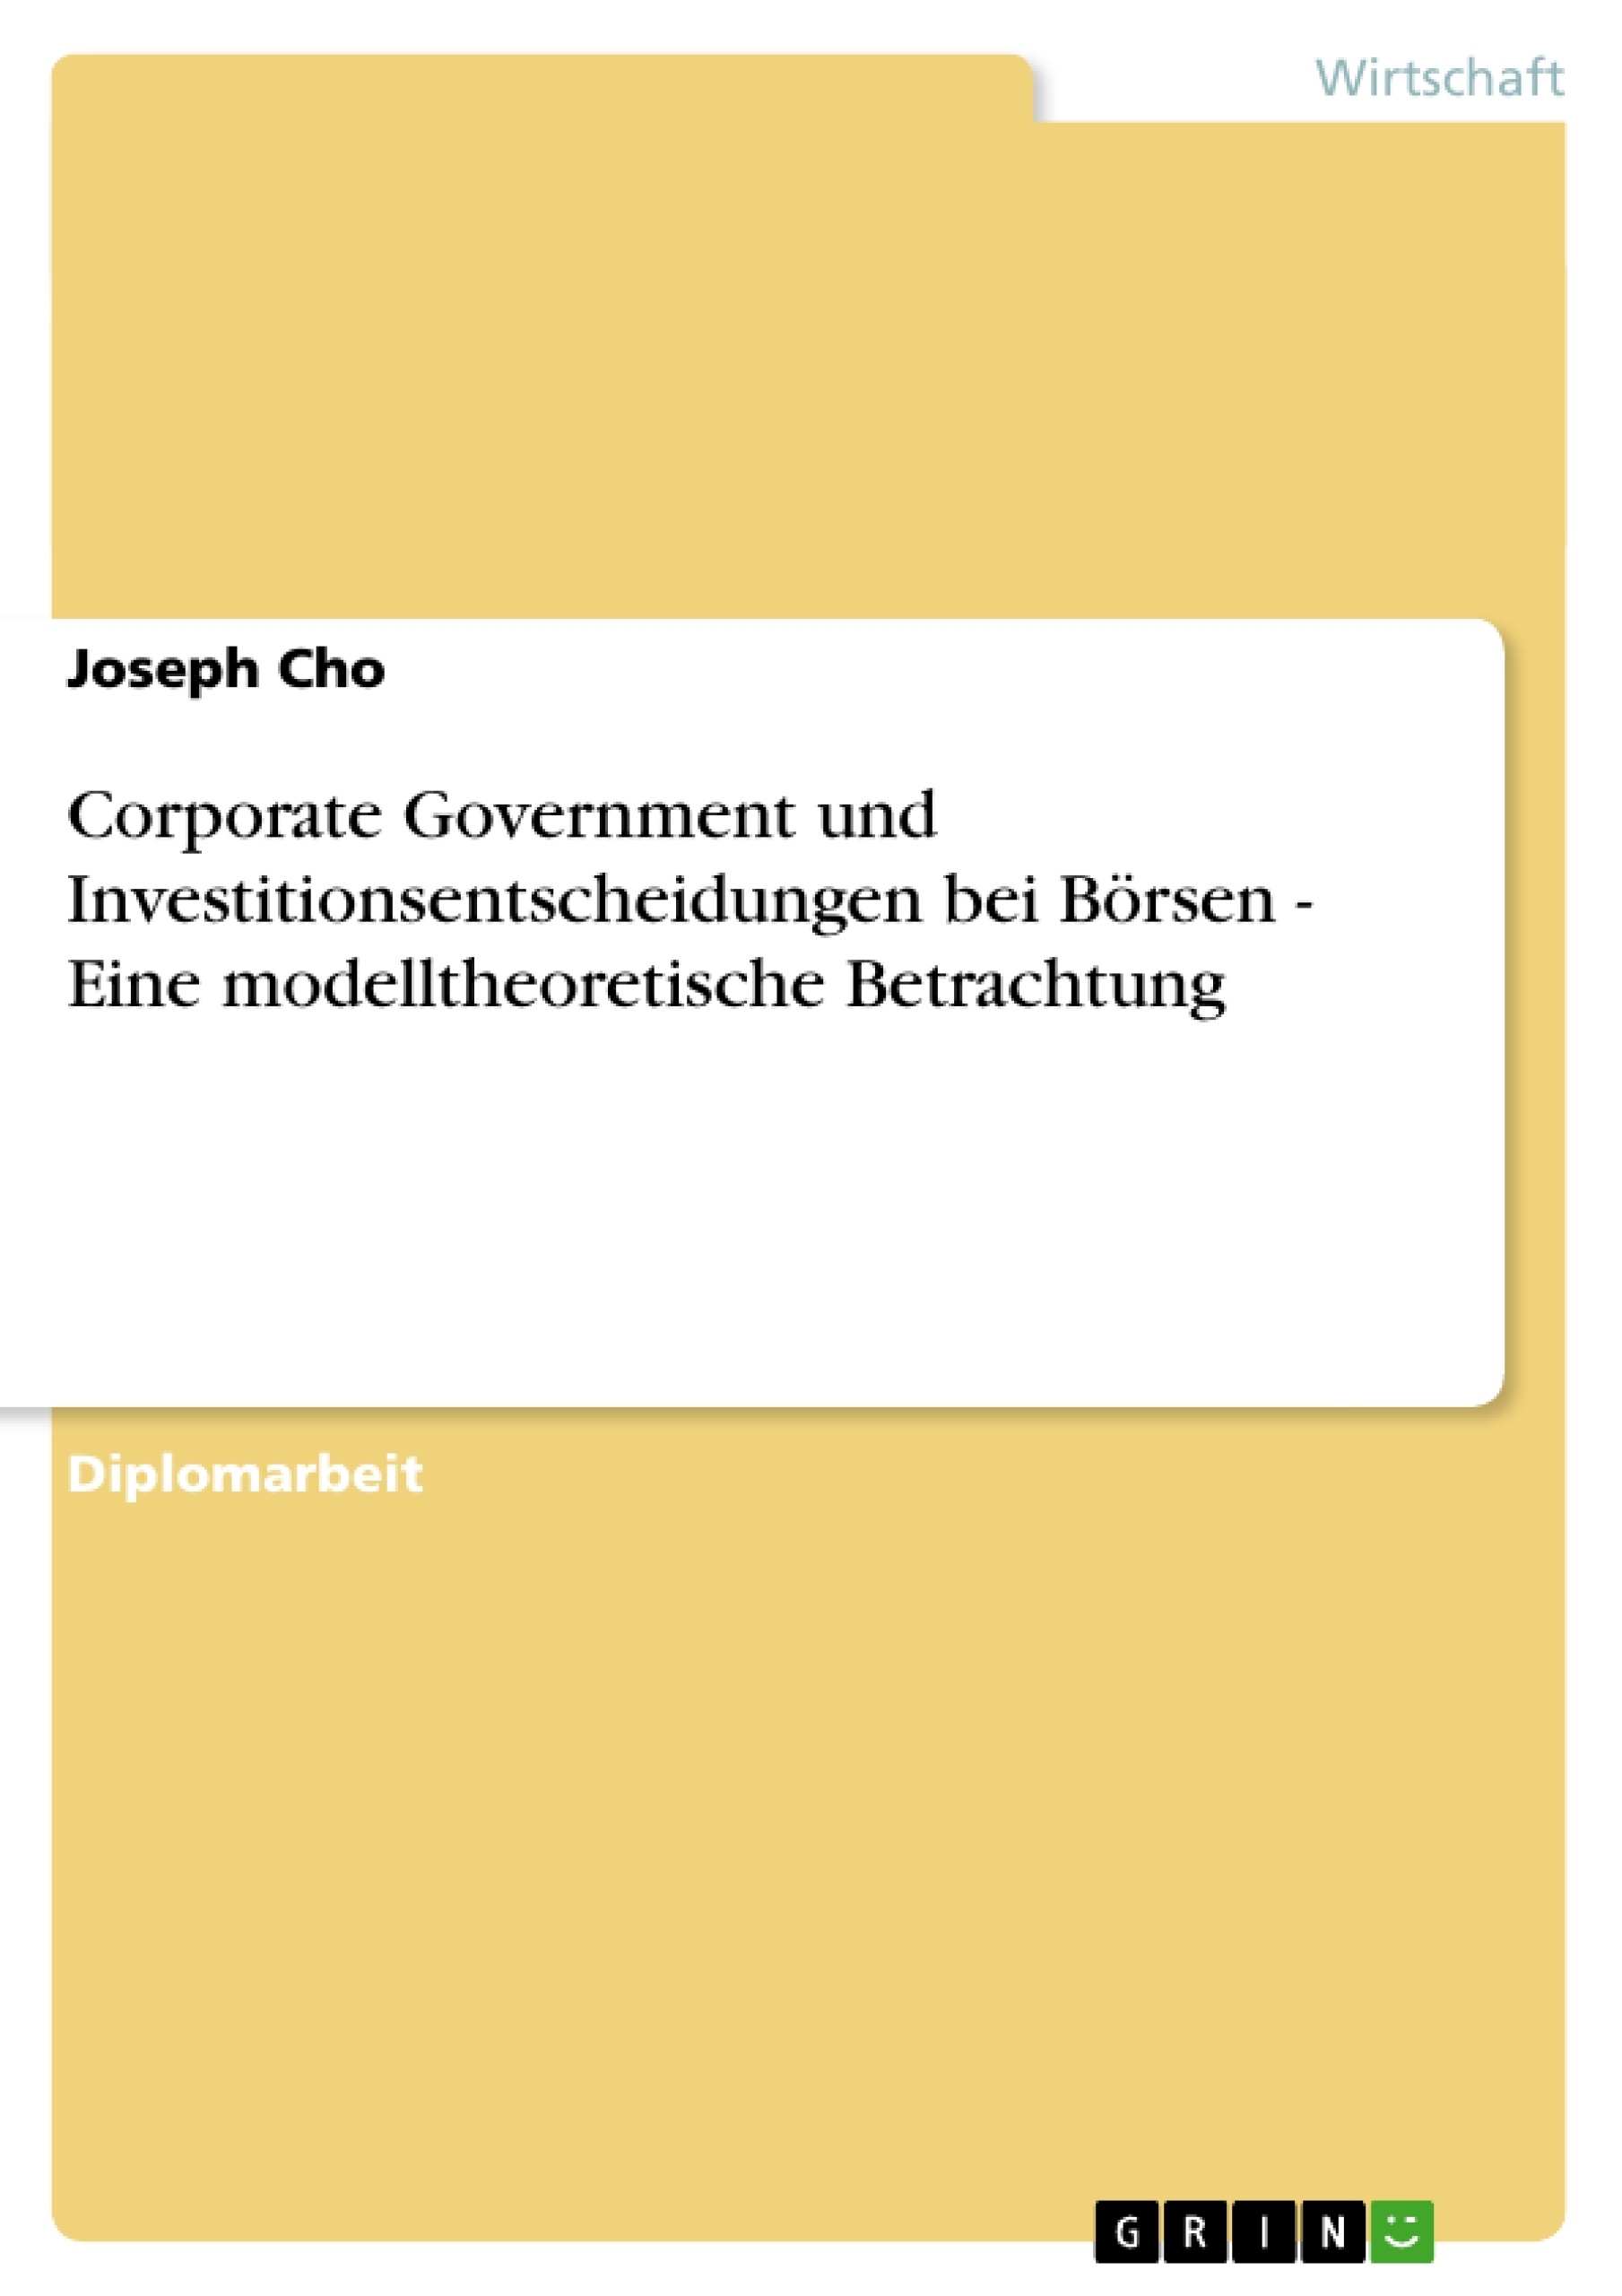 Titre: Corporate Government und Investitionsentscheidungen bei Börsen - Eine modelltheoretische Betrachtung